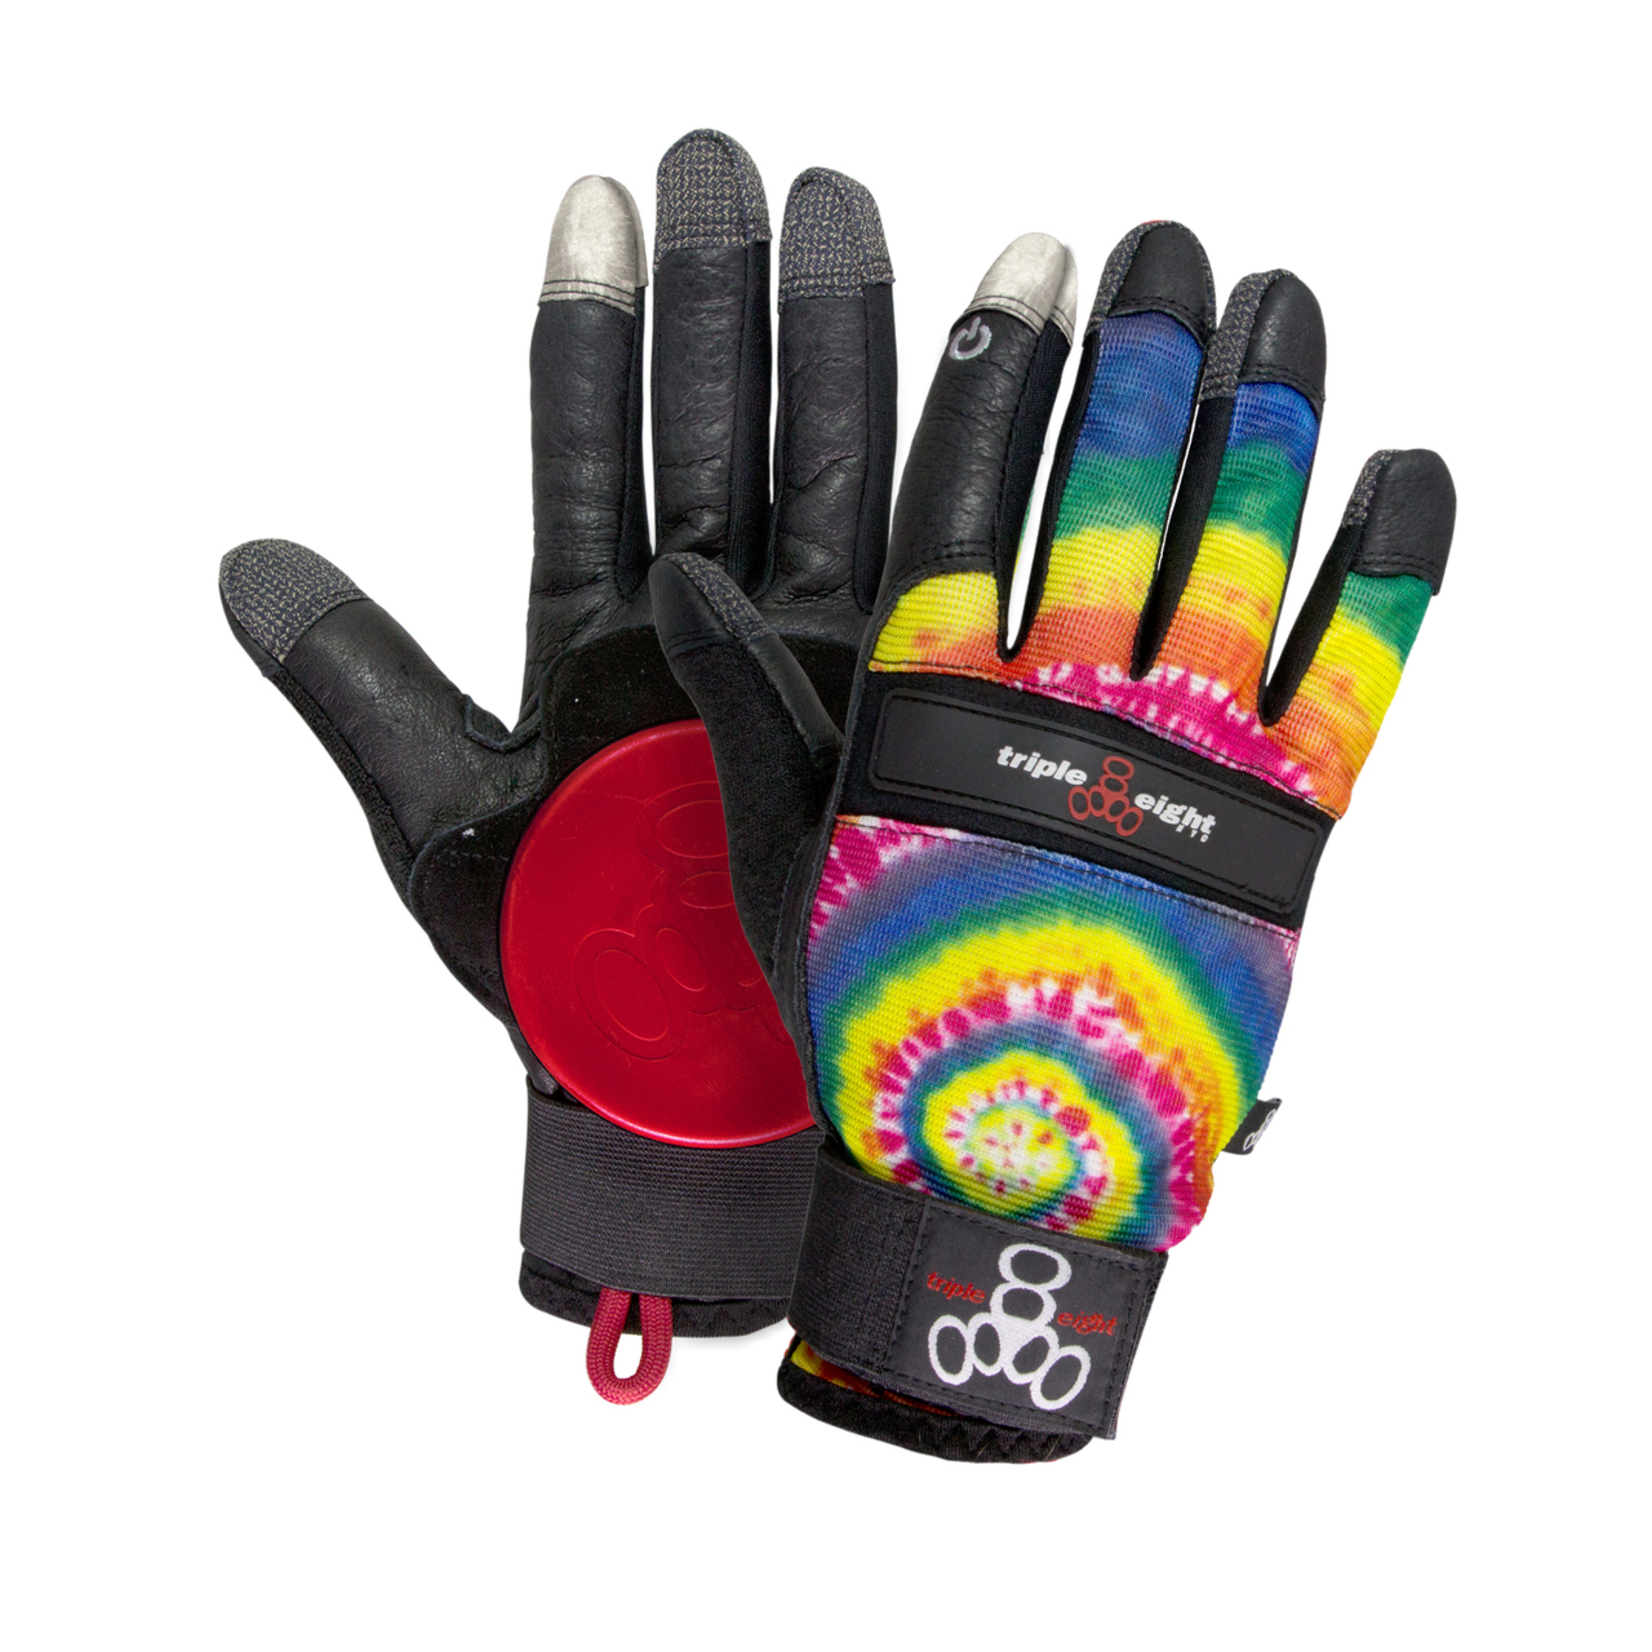 Triple 8 Tie Dye Downhill Longboard Gloves